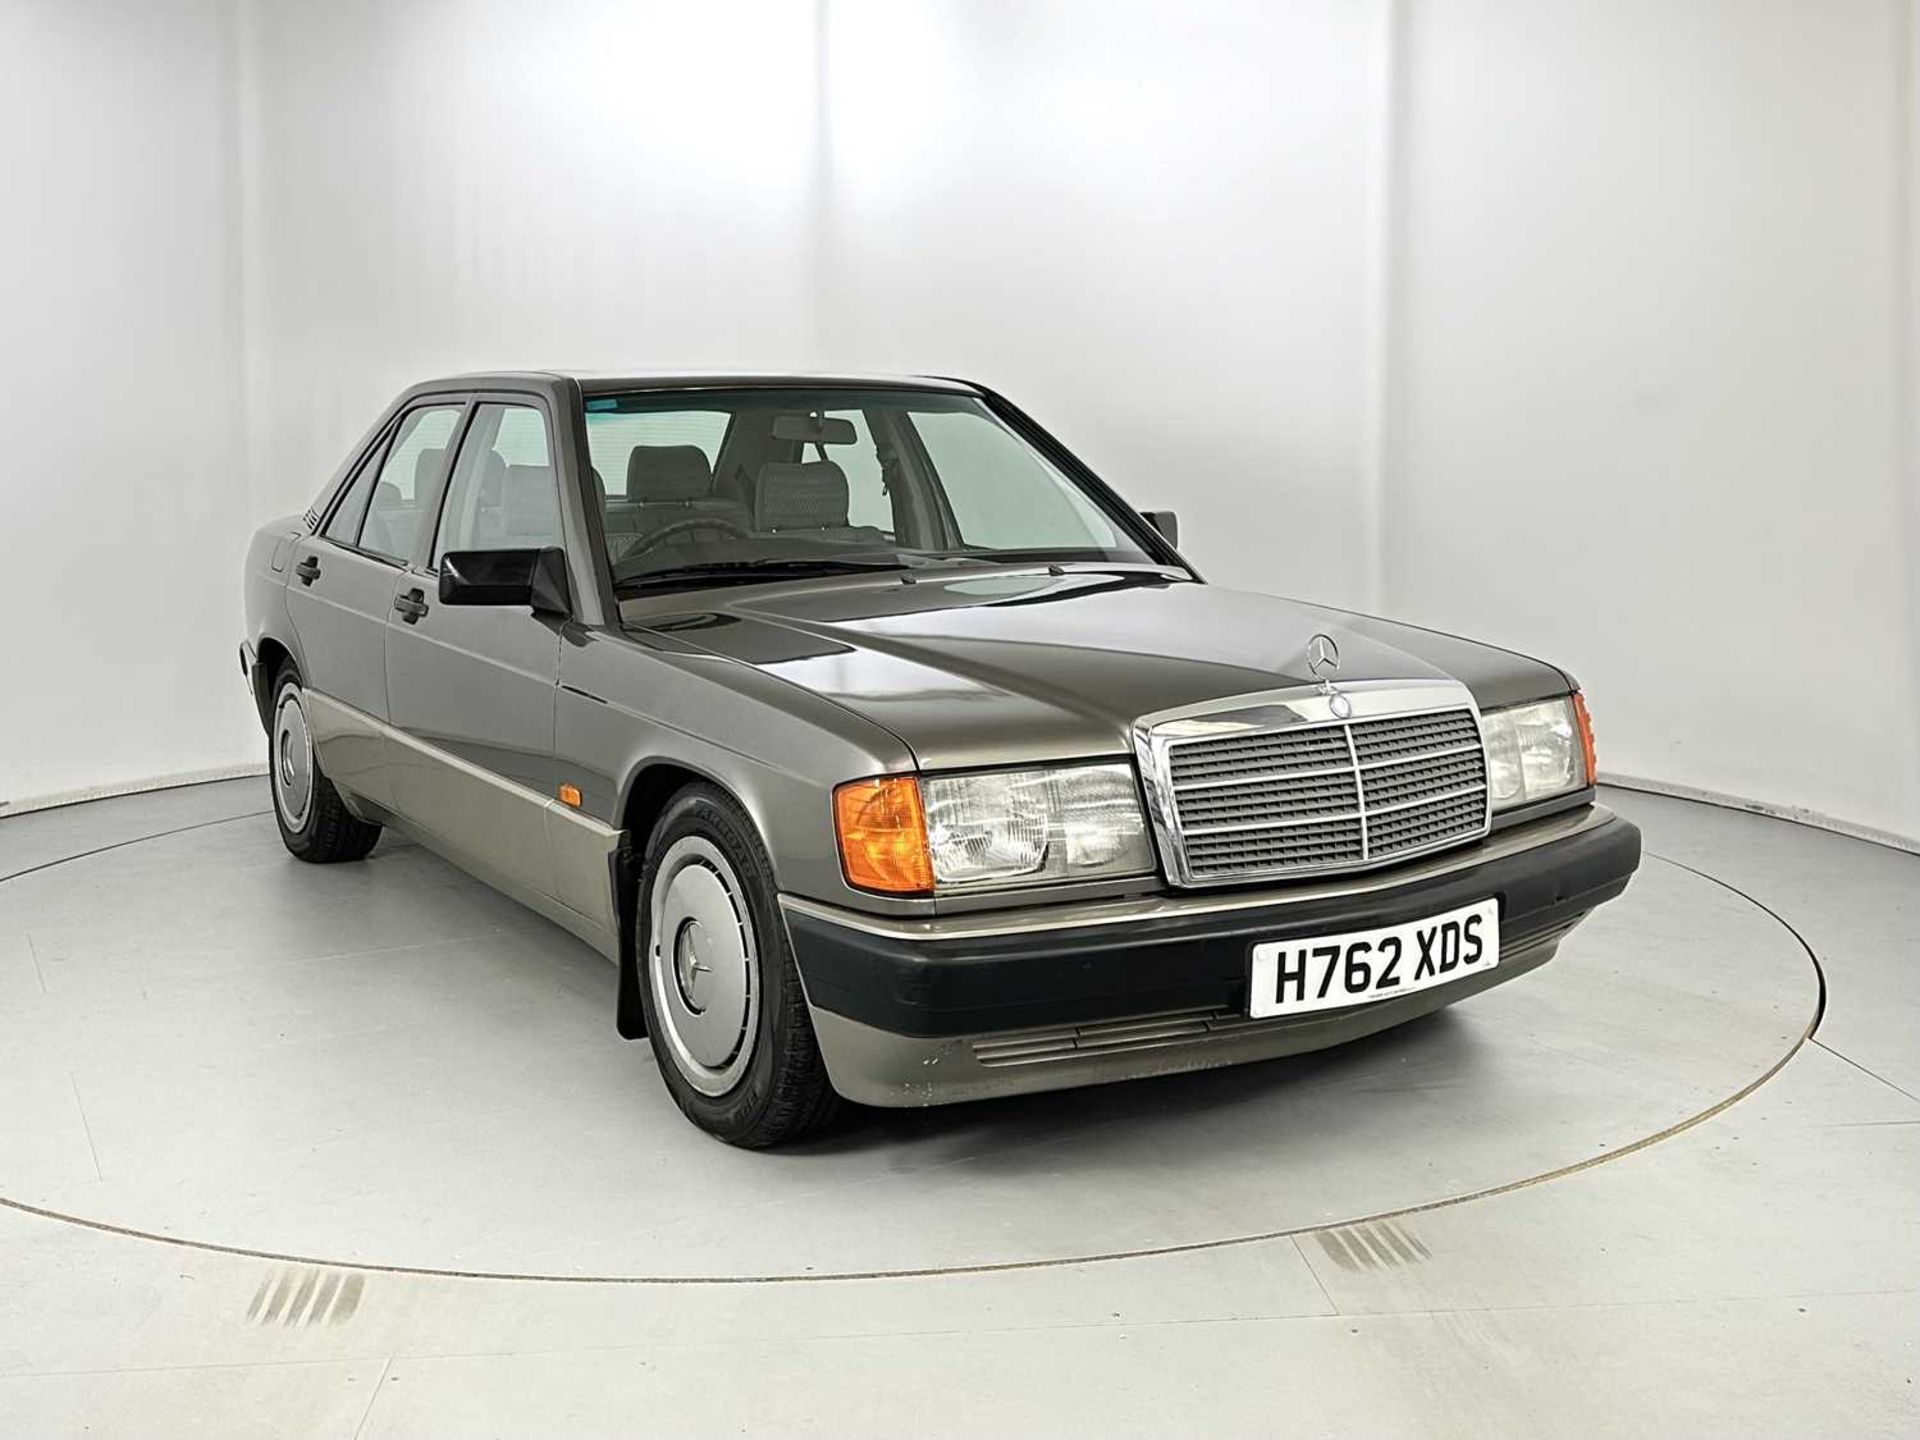 1990 Mercedes-Benz 190E Only 36,000 miles! 